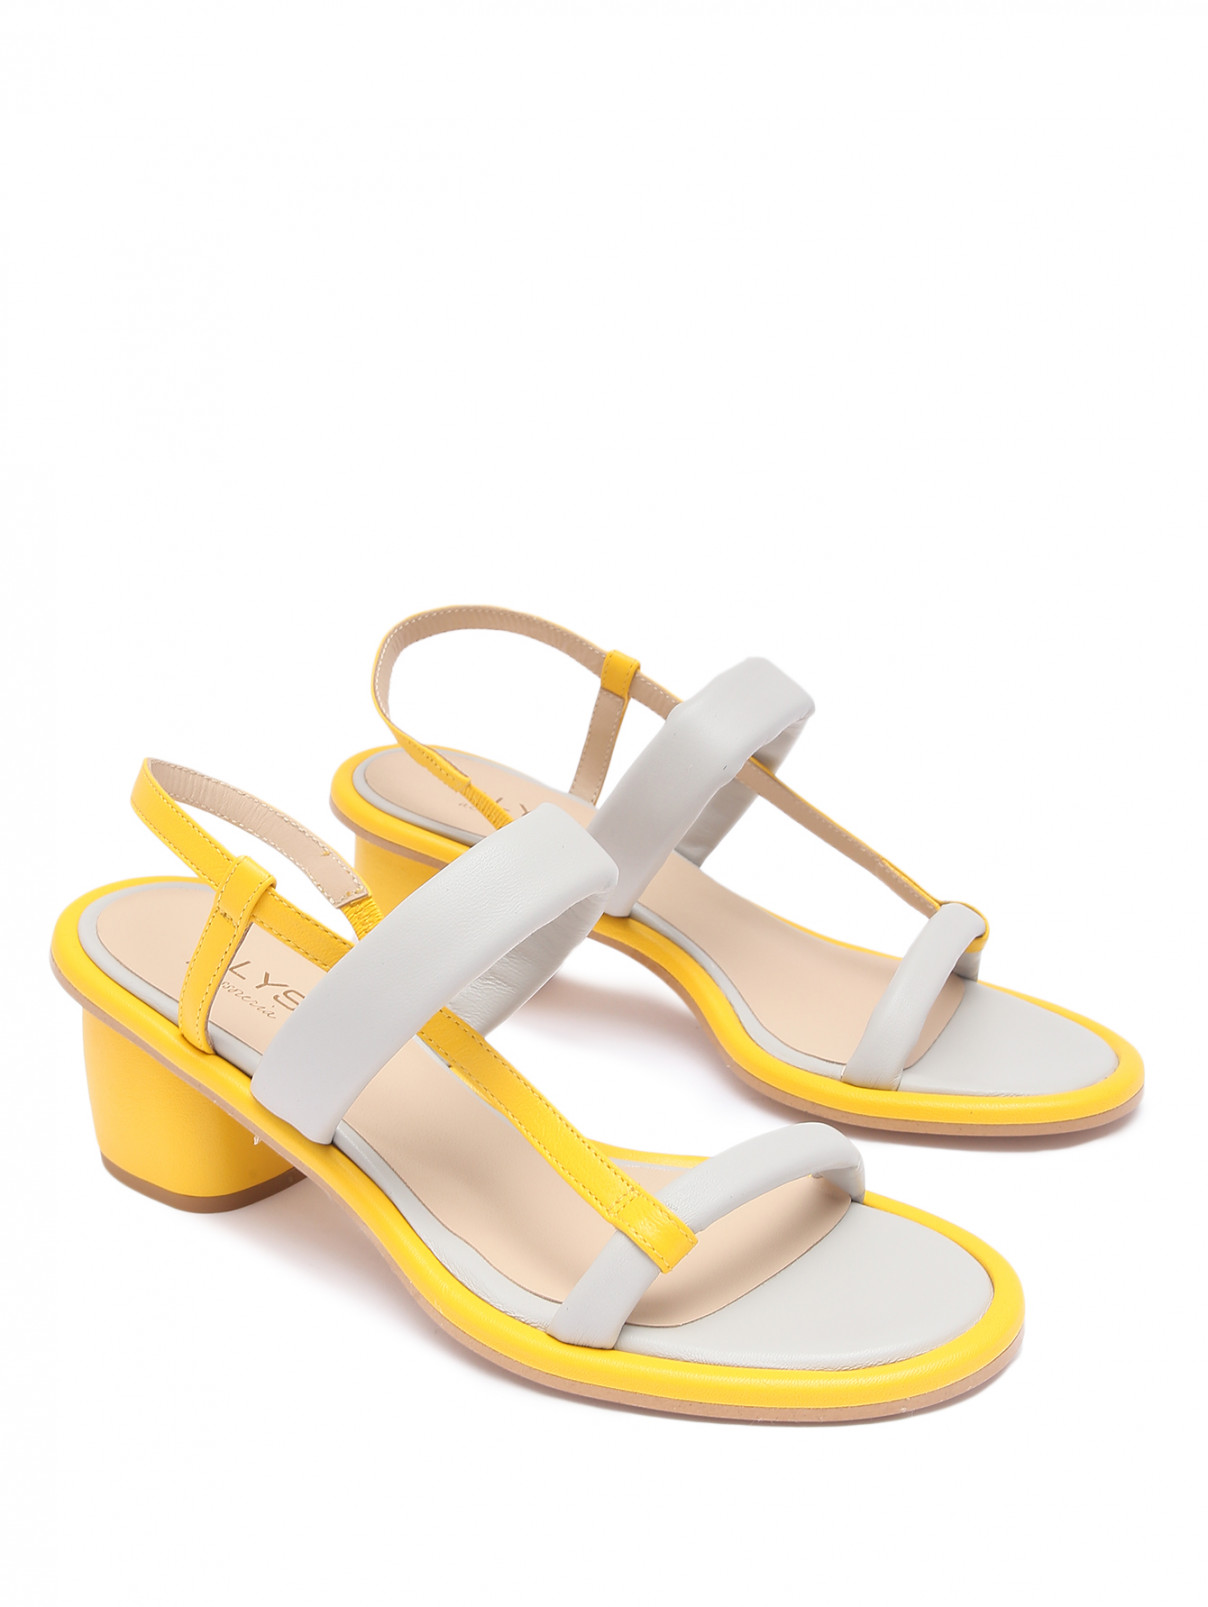 Босоножки на устойчевом каблуке Alysi  –  Общий вид  – Цвет:  Желтый